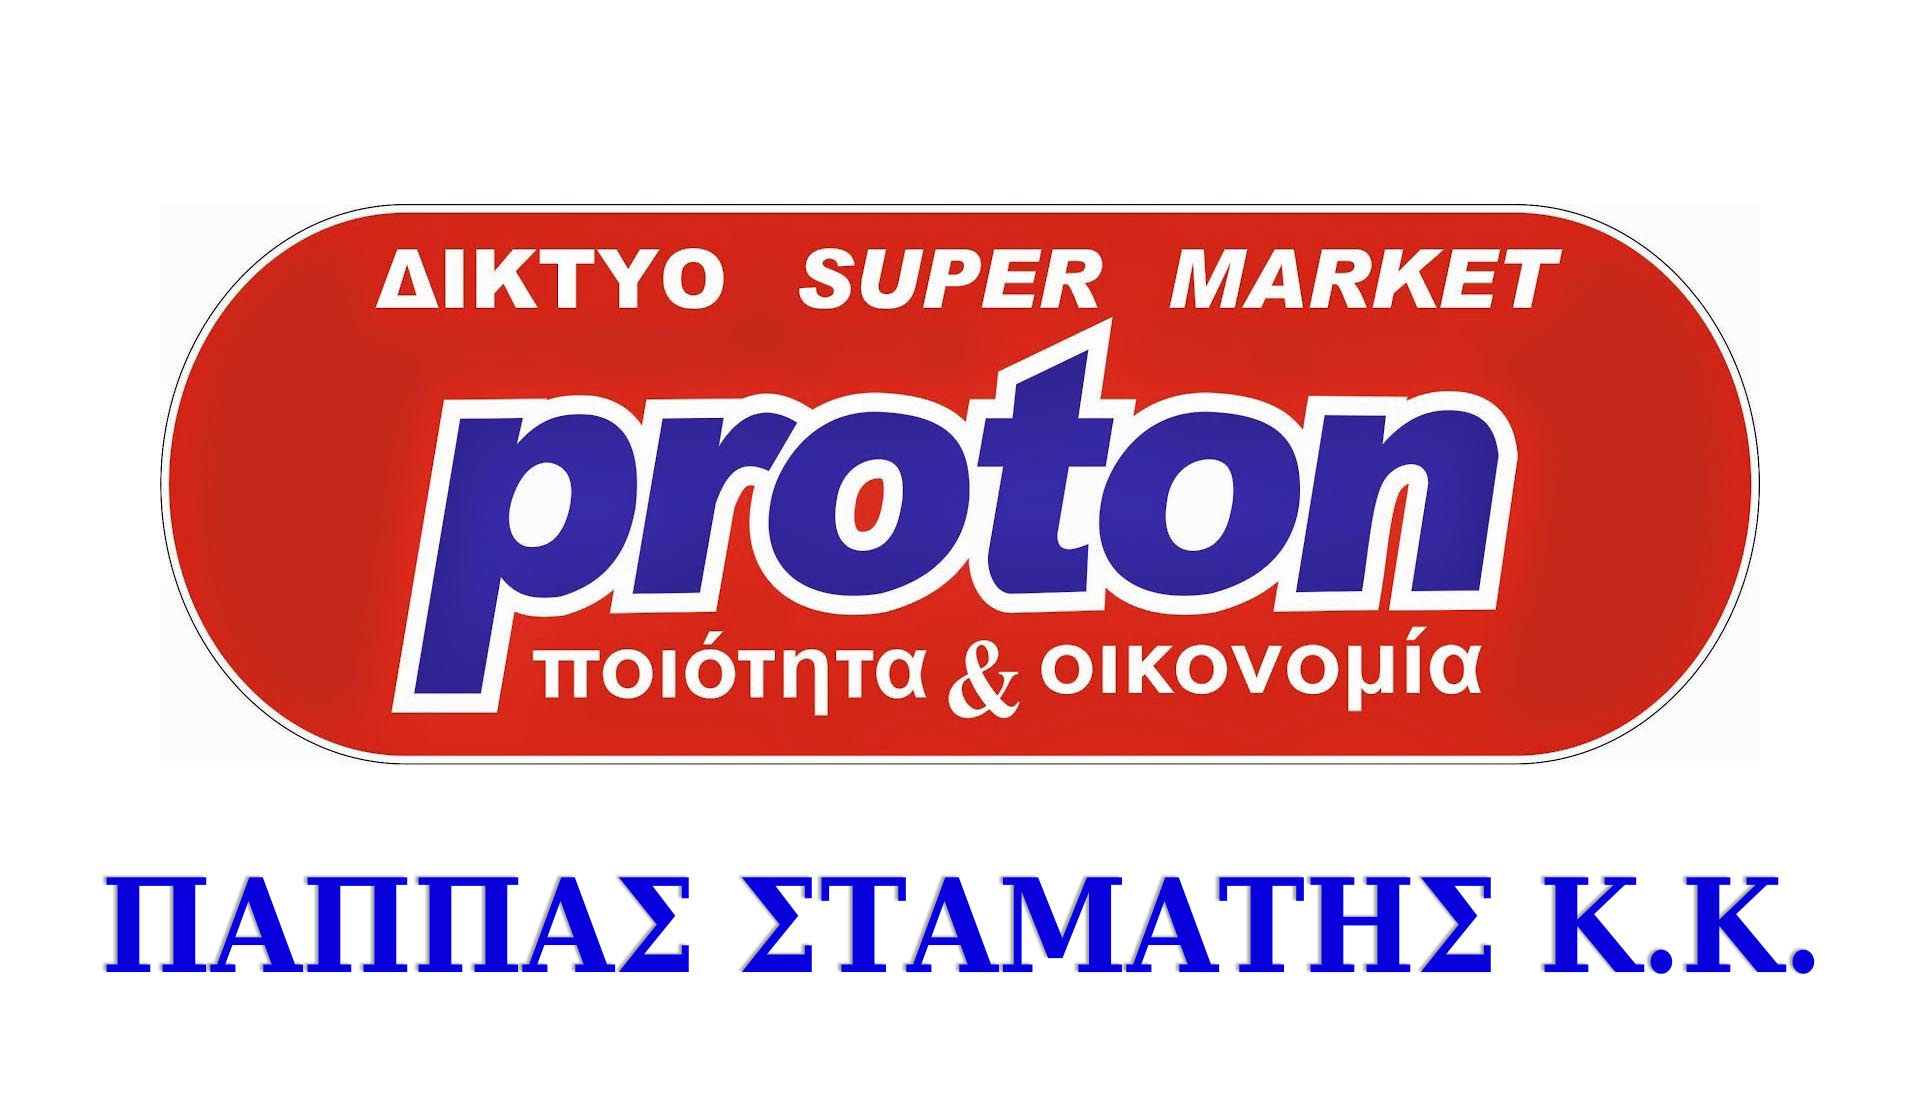 Proton Market Pappas Stamatis k.k. Perdika Thesprotia Quality and Economy!